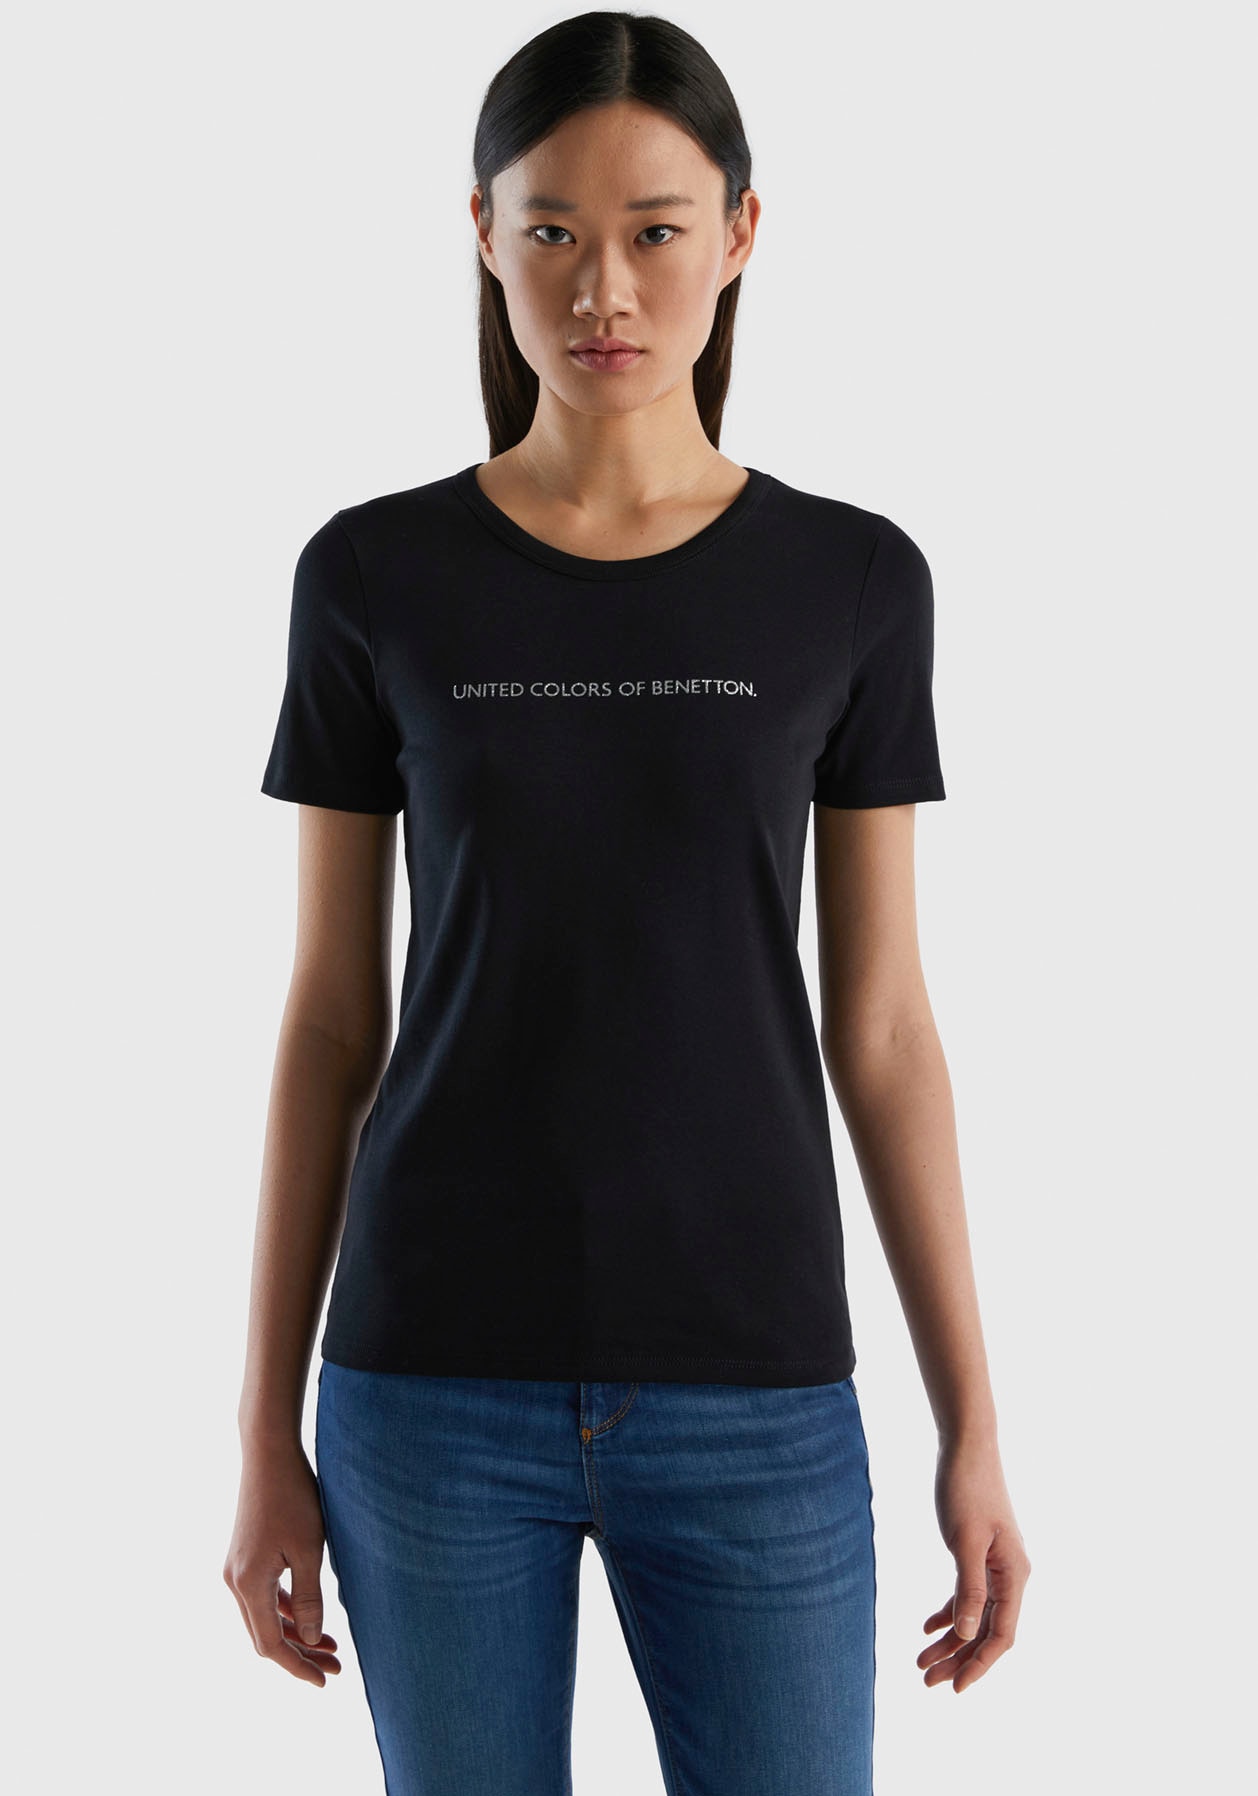 Colors online Jelmoli-Versand Benetton United T-Shirt, bestellen mit bei of Druck (1 glitzerndem Schweiz tlg.),